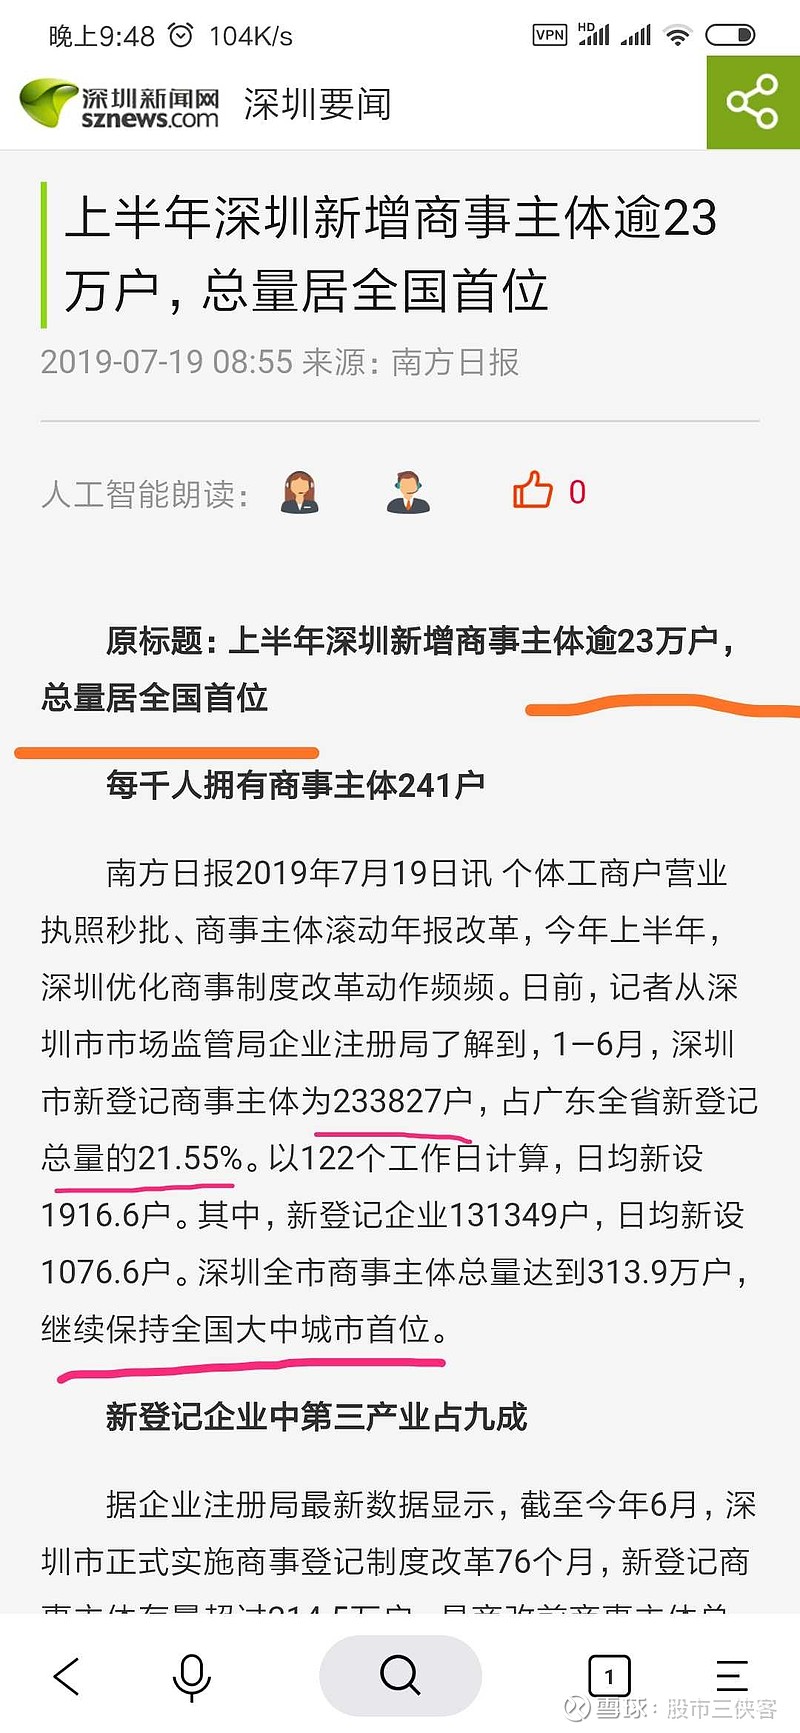 深圳企业最新数据:1-6月深圳